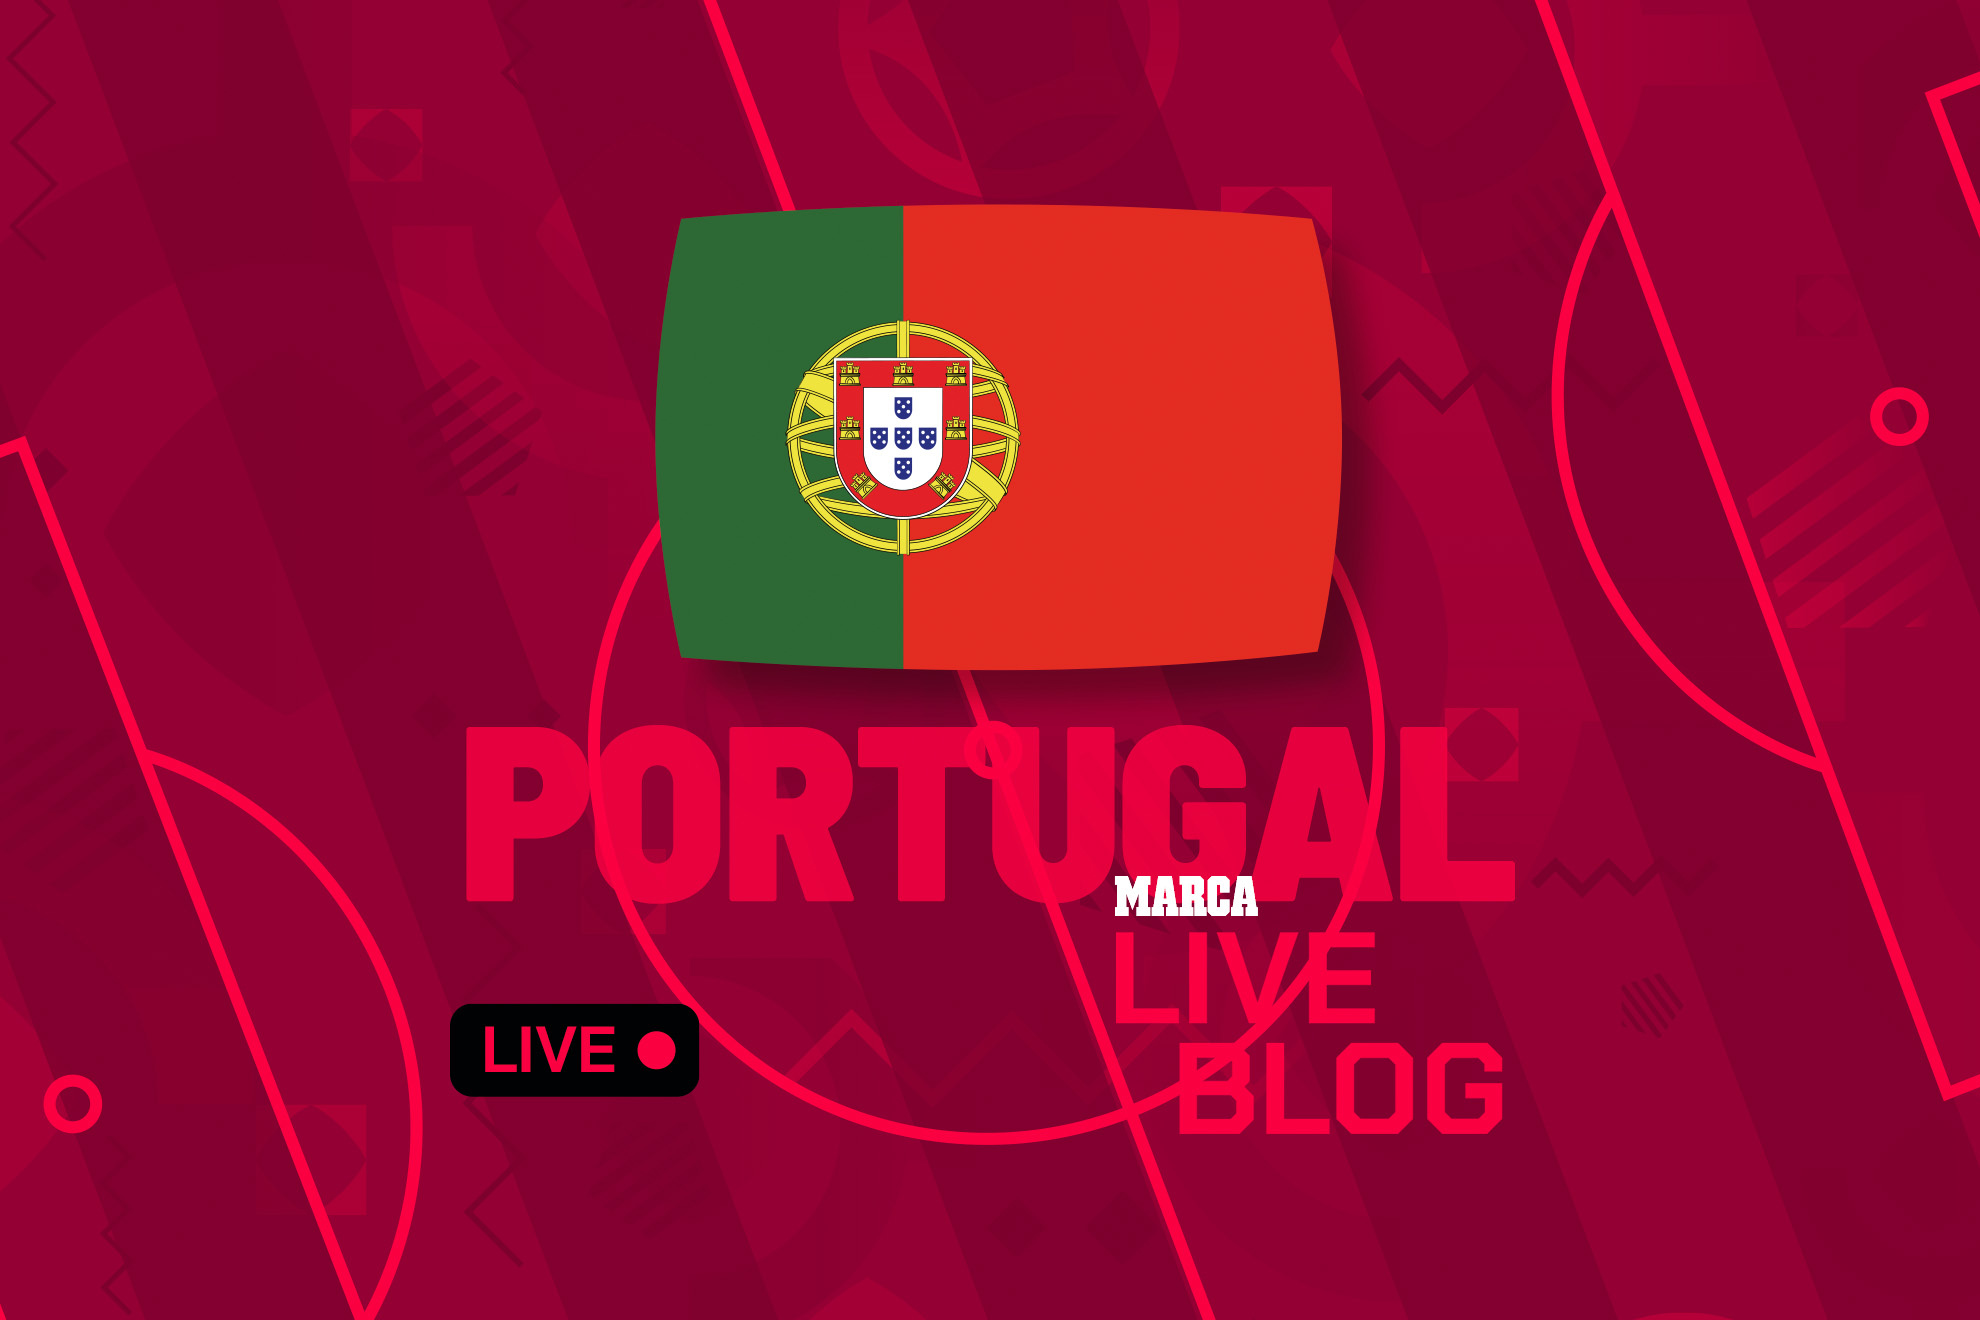 Portugal en el Mundial 2022 de Qatar, en directo | Última hora sobre la selección portuguesa en la Copa del Mundo